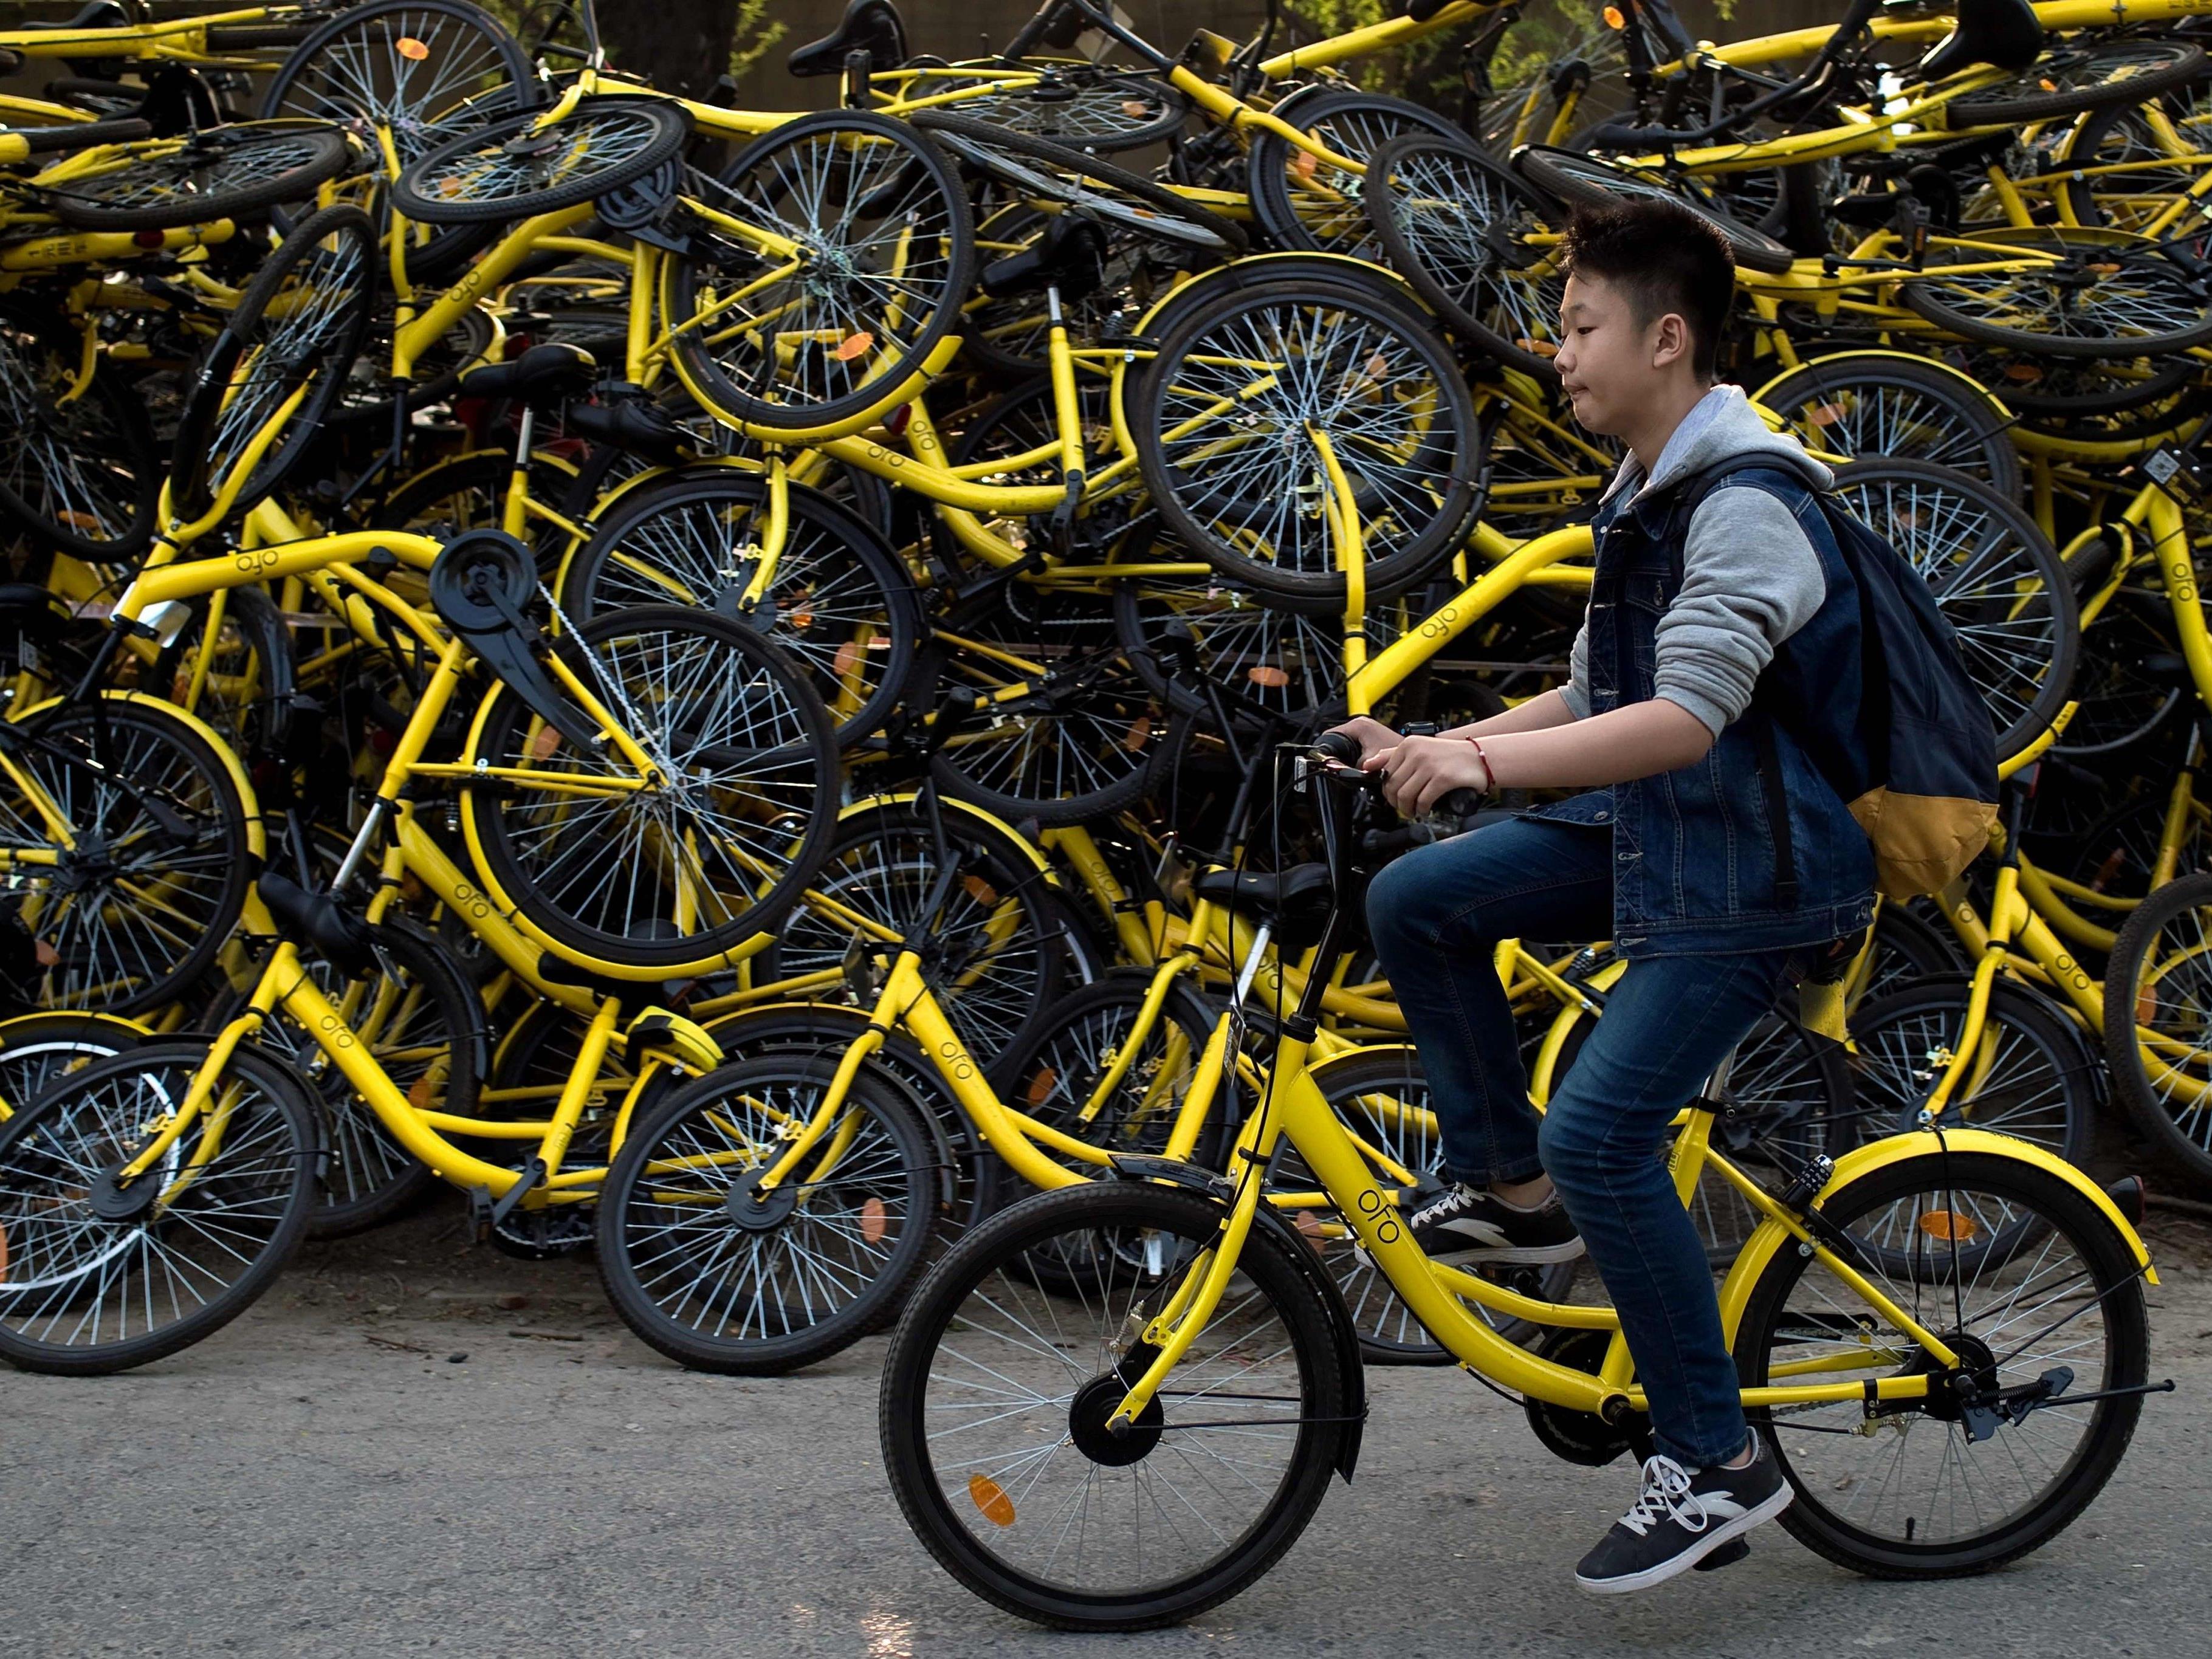 Die klassischen gelben Ofo-Fahrräder werden bald auch in Wien zu sehen sein